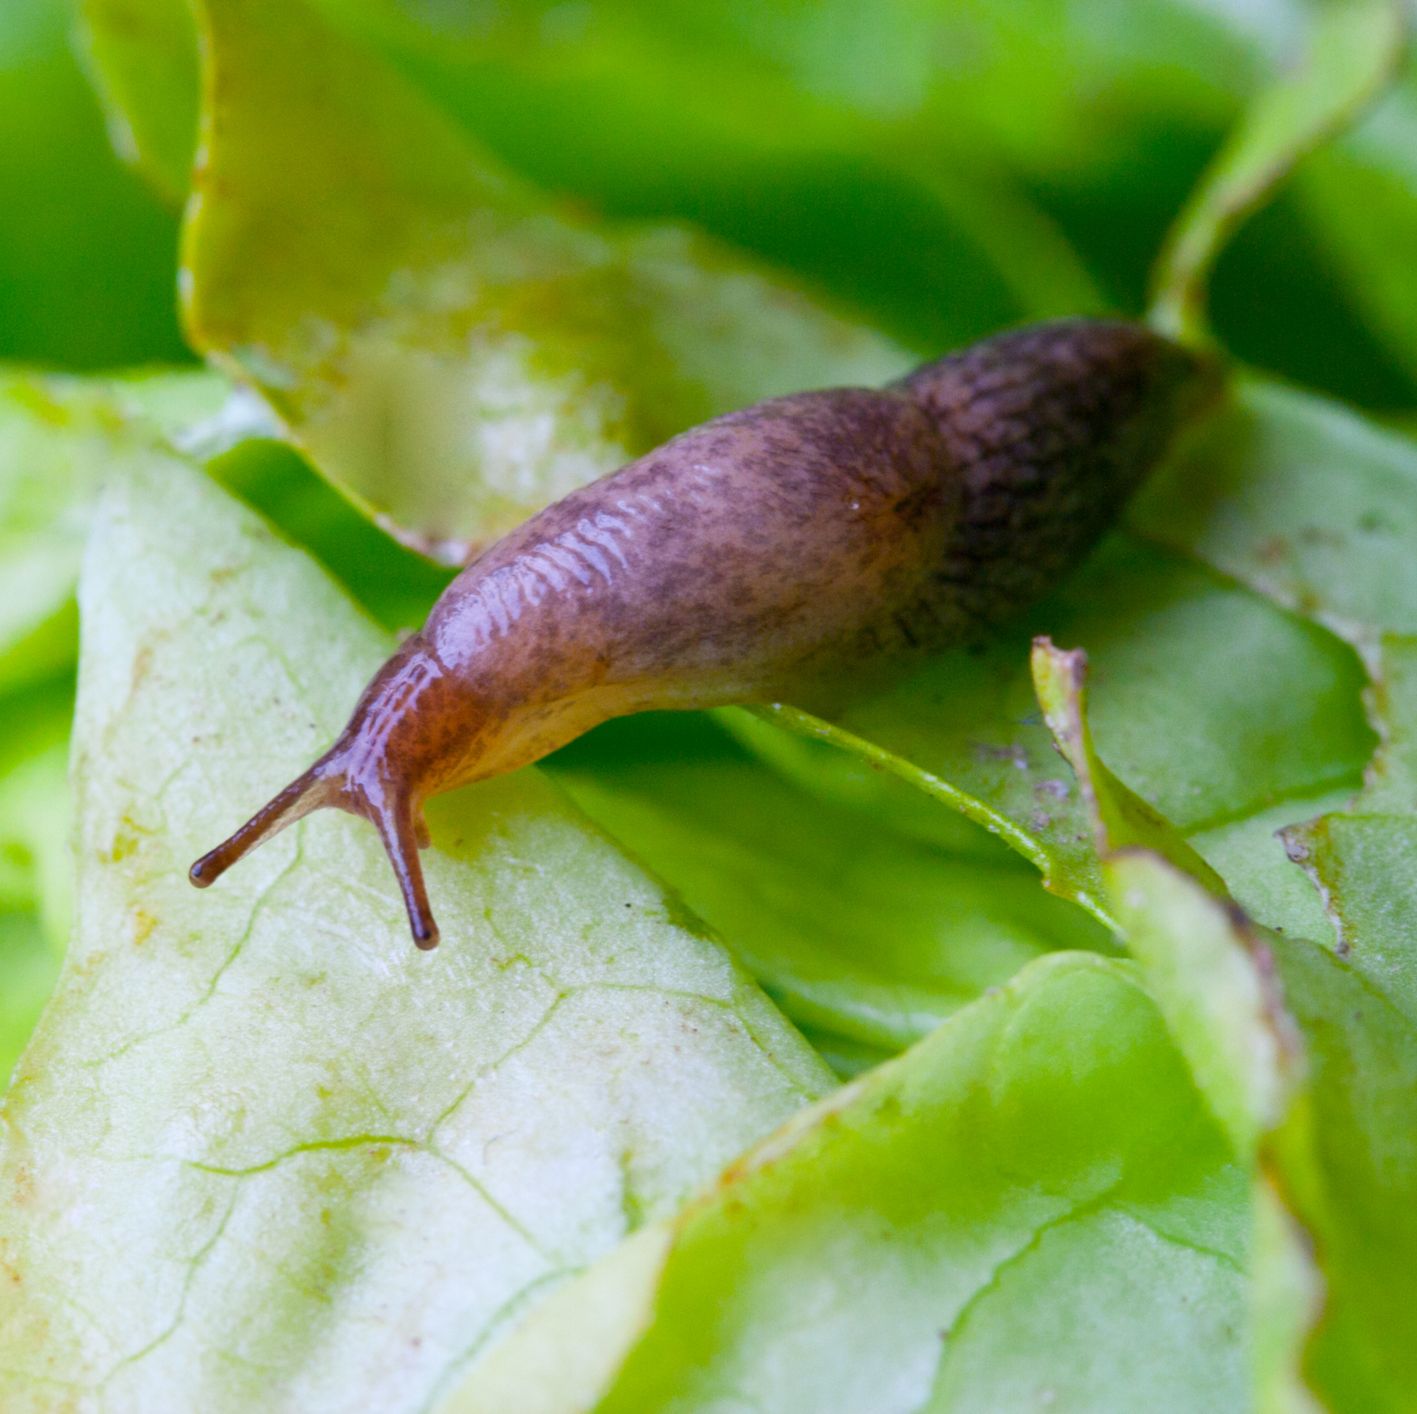 Get involved with the RHS garden slug hunt